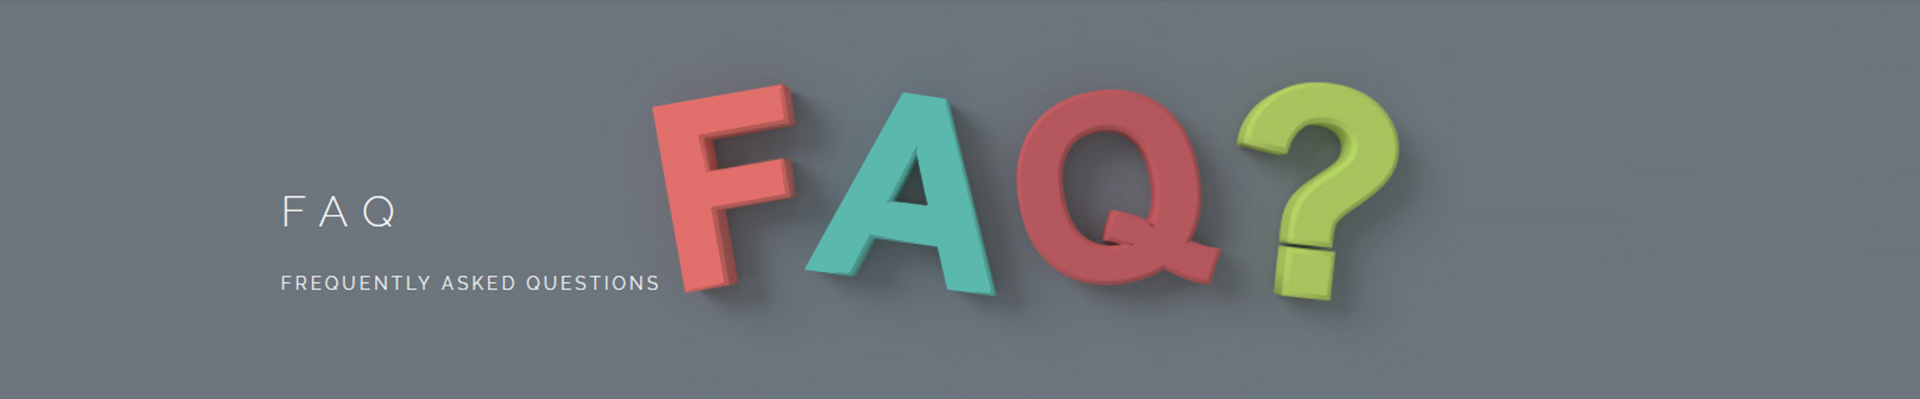 FAQs-બેનર